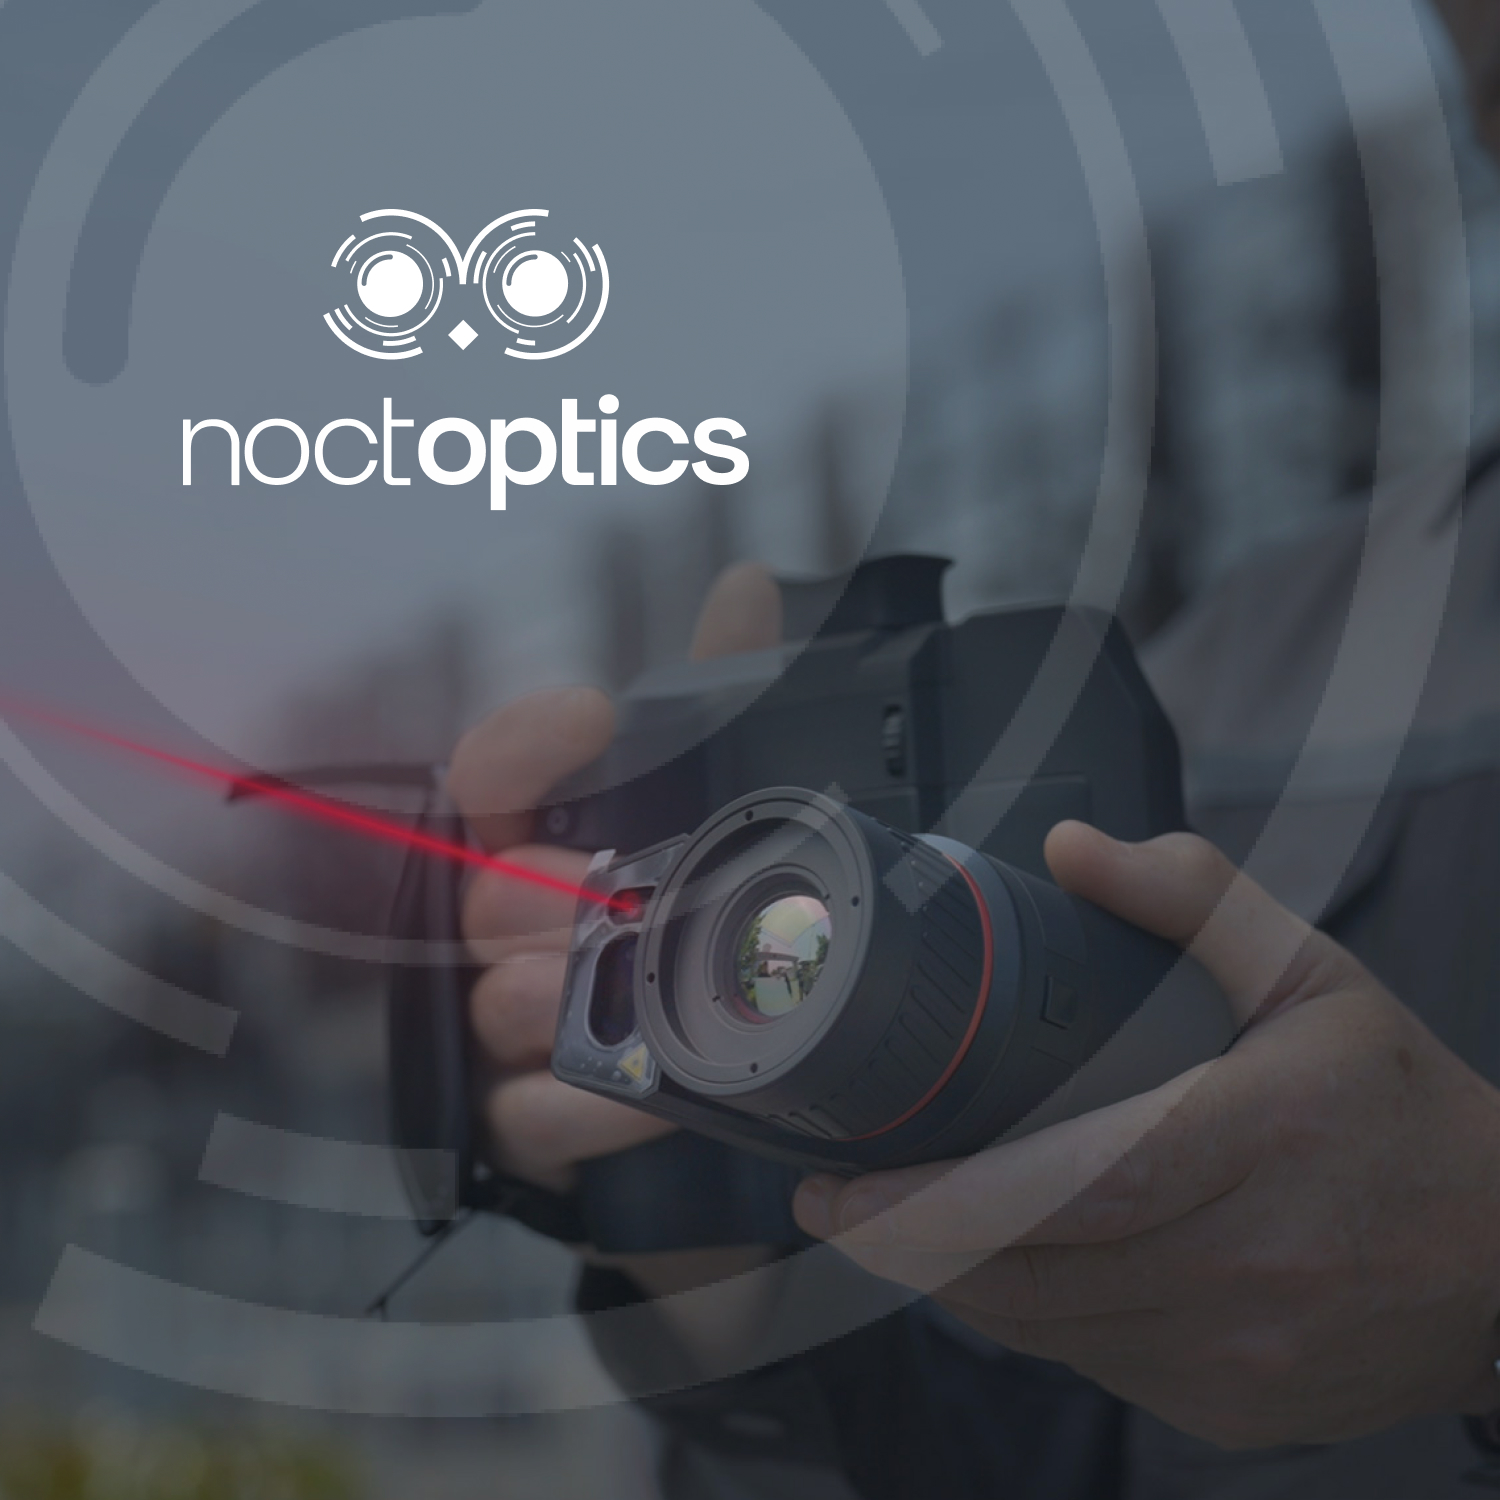 Noctoptics